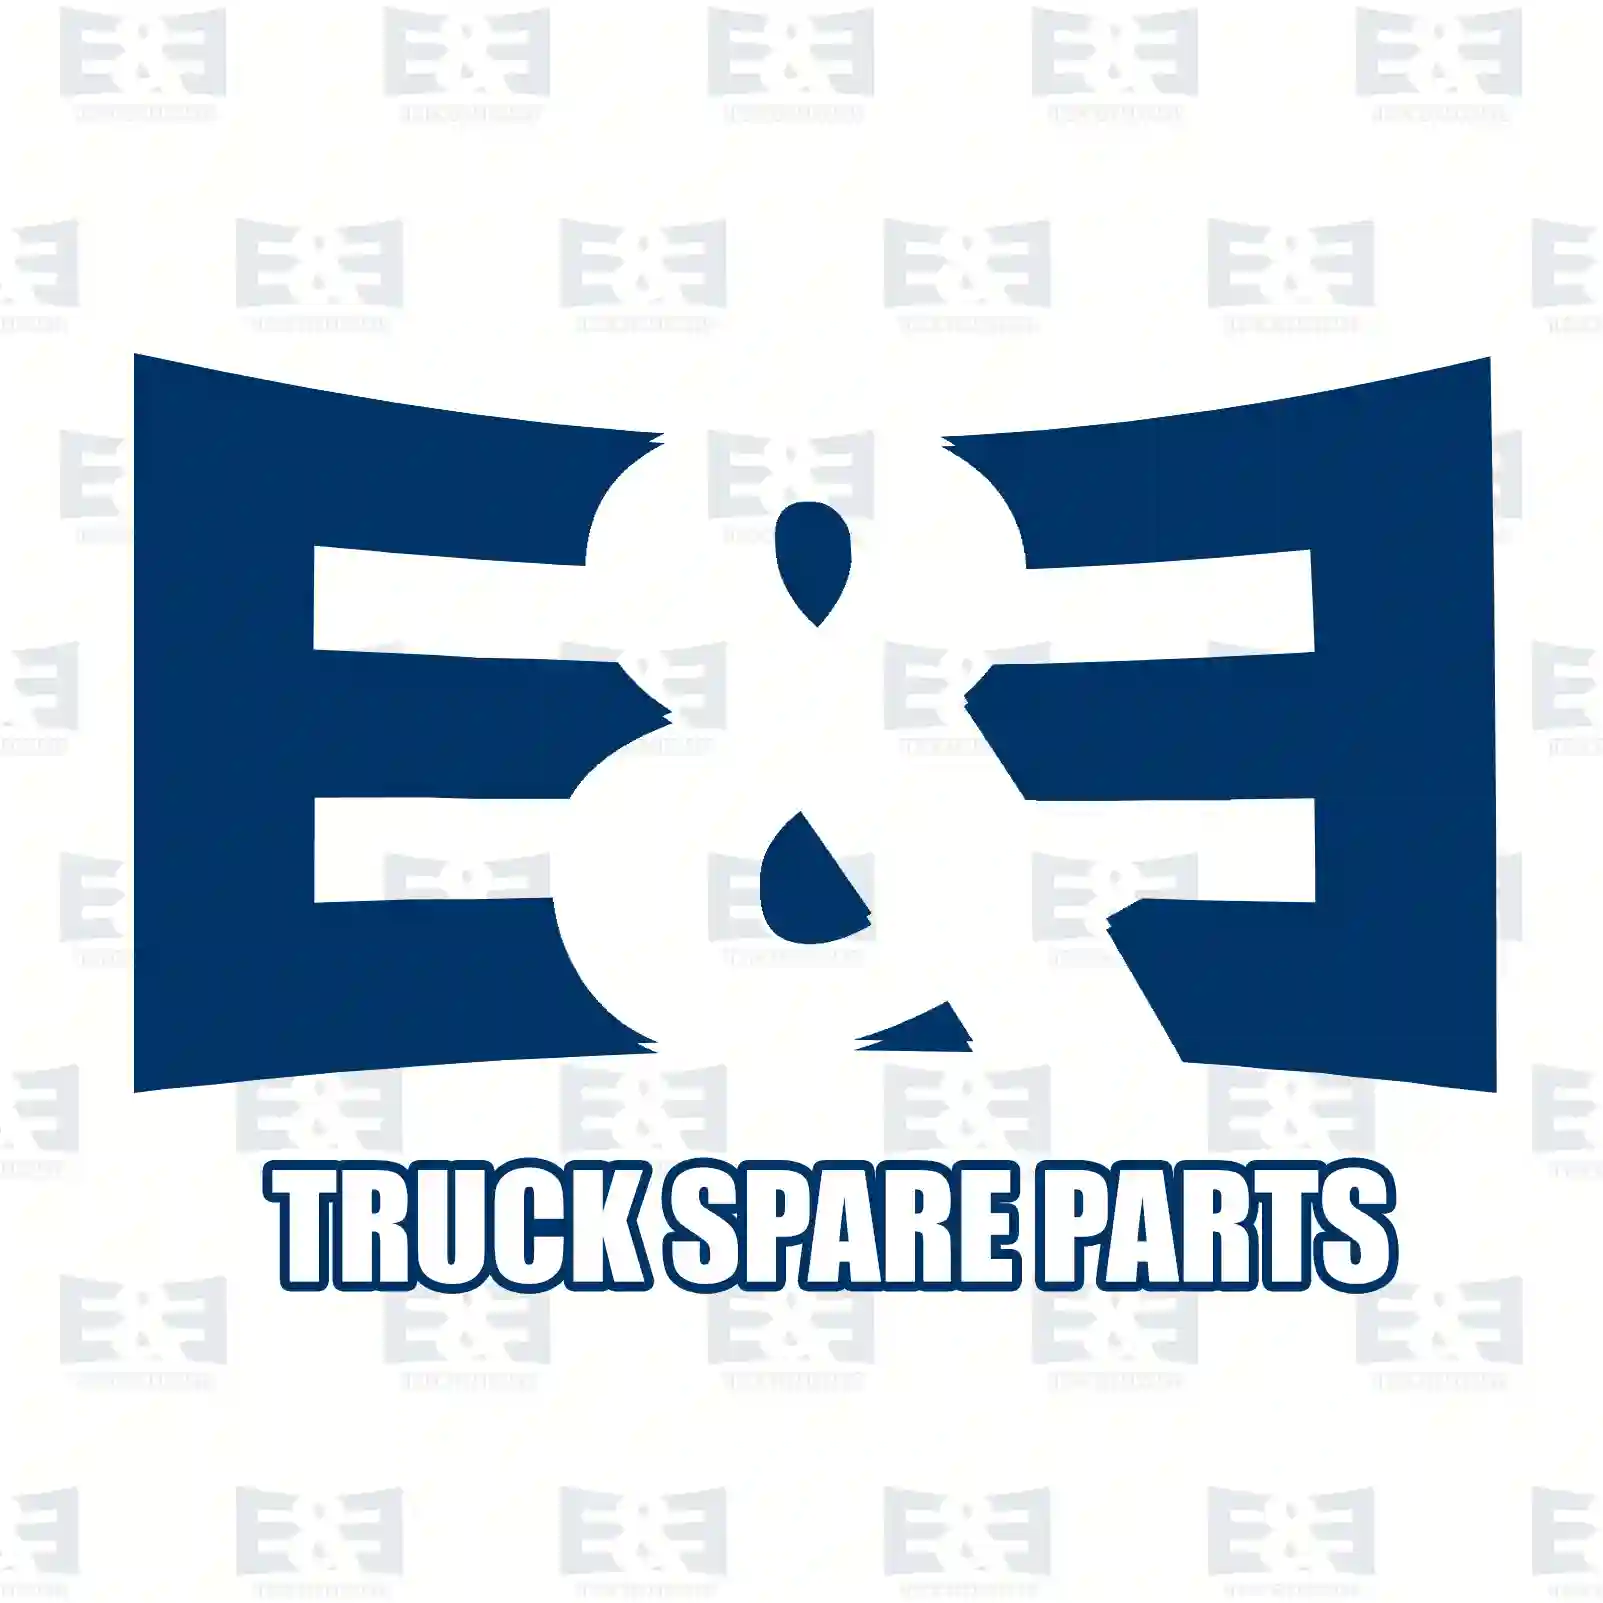 Multiribbed belt, 2E2203908, 3099261, 3103706, 3289963, 3972375, 3974249, 4933083, 3289963, BG7X-8620-AA, 1512178, 1800525, 1800531, 1888467, 2T2145933B, ZG01404-0008 ||  2E2203908 E&E Truck Spare Parts | Truck Spare Parts, Auotomotive Spare Parts Multiribbed belt, 2E2203908, 3099261, 3103706, 3289963, 3972375, 3974249, 4933083, 3289963, BG7X-8620-AA, 1512178, 1800525, 1800531, 1888467, 2T2145933B, ZG01404-0008 ||  2E2203908 E&E Truck Spare Parts | Truck Spare Parts, Auotomotive Spare Parts